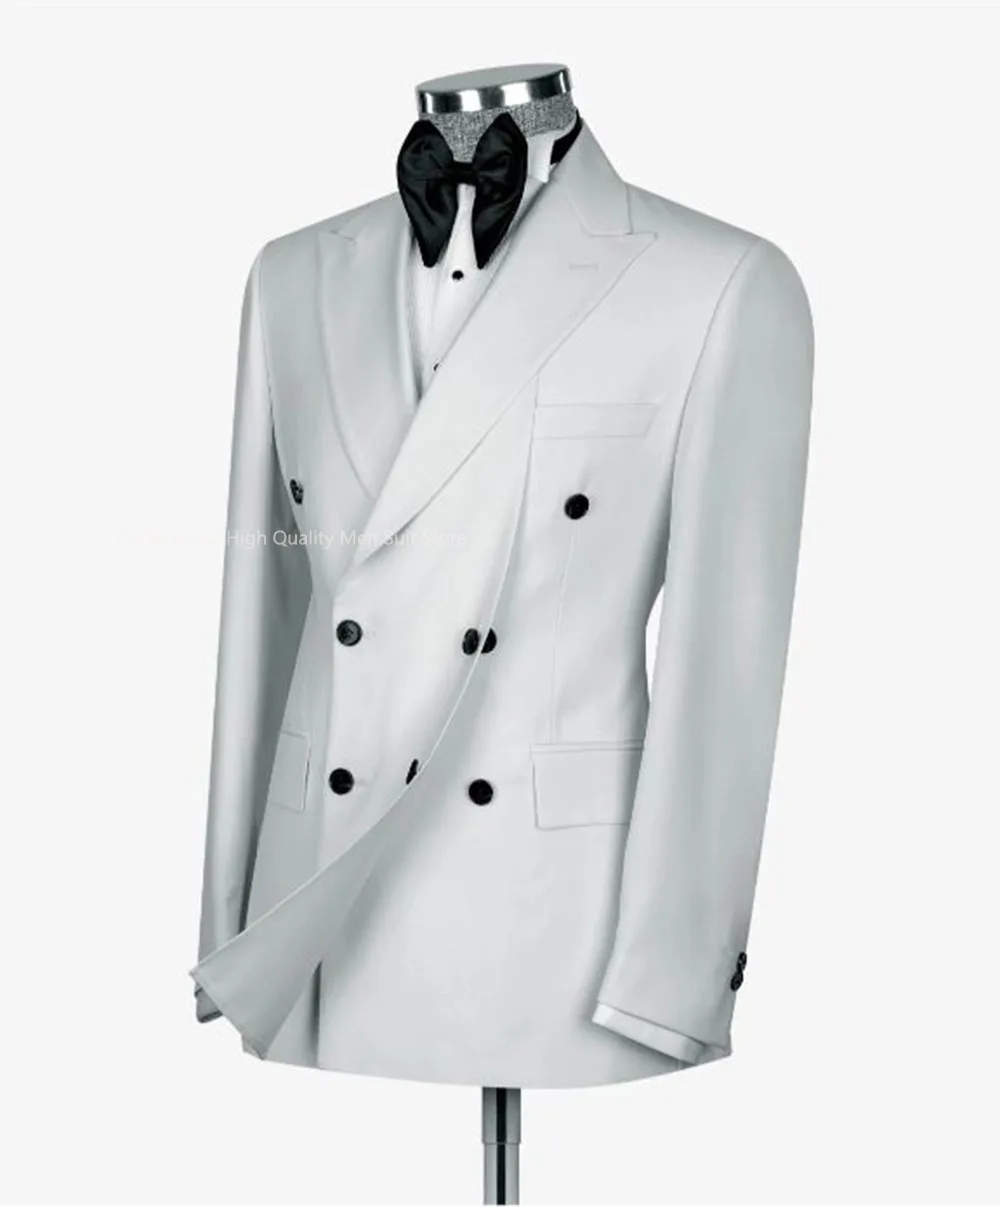 פיצול עיצוב חליפות גברים מעיל חתונה חליפות כפול עם חזה לשיא דש הז ' קט בגדי החתן נשף מסיבה רשמית בלייזר בלבד